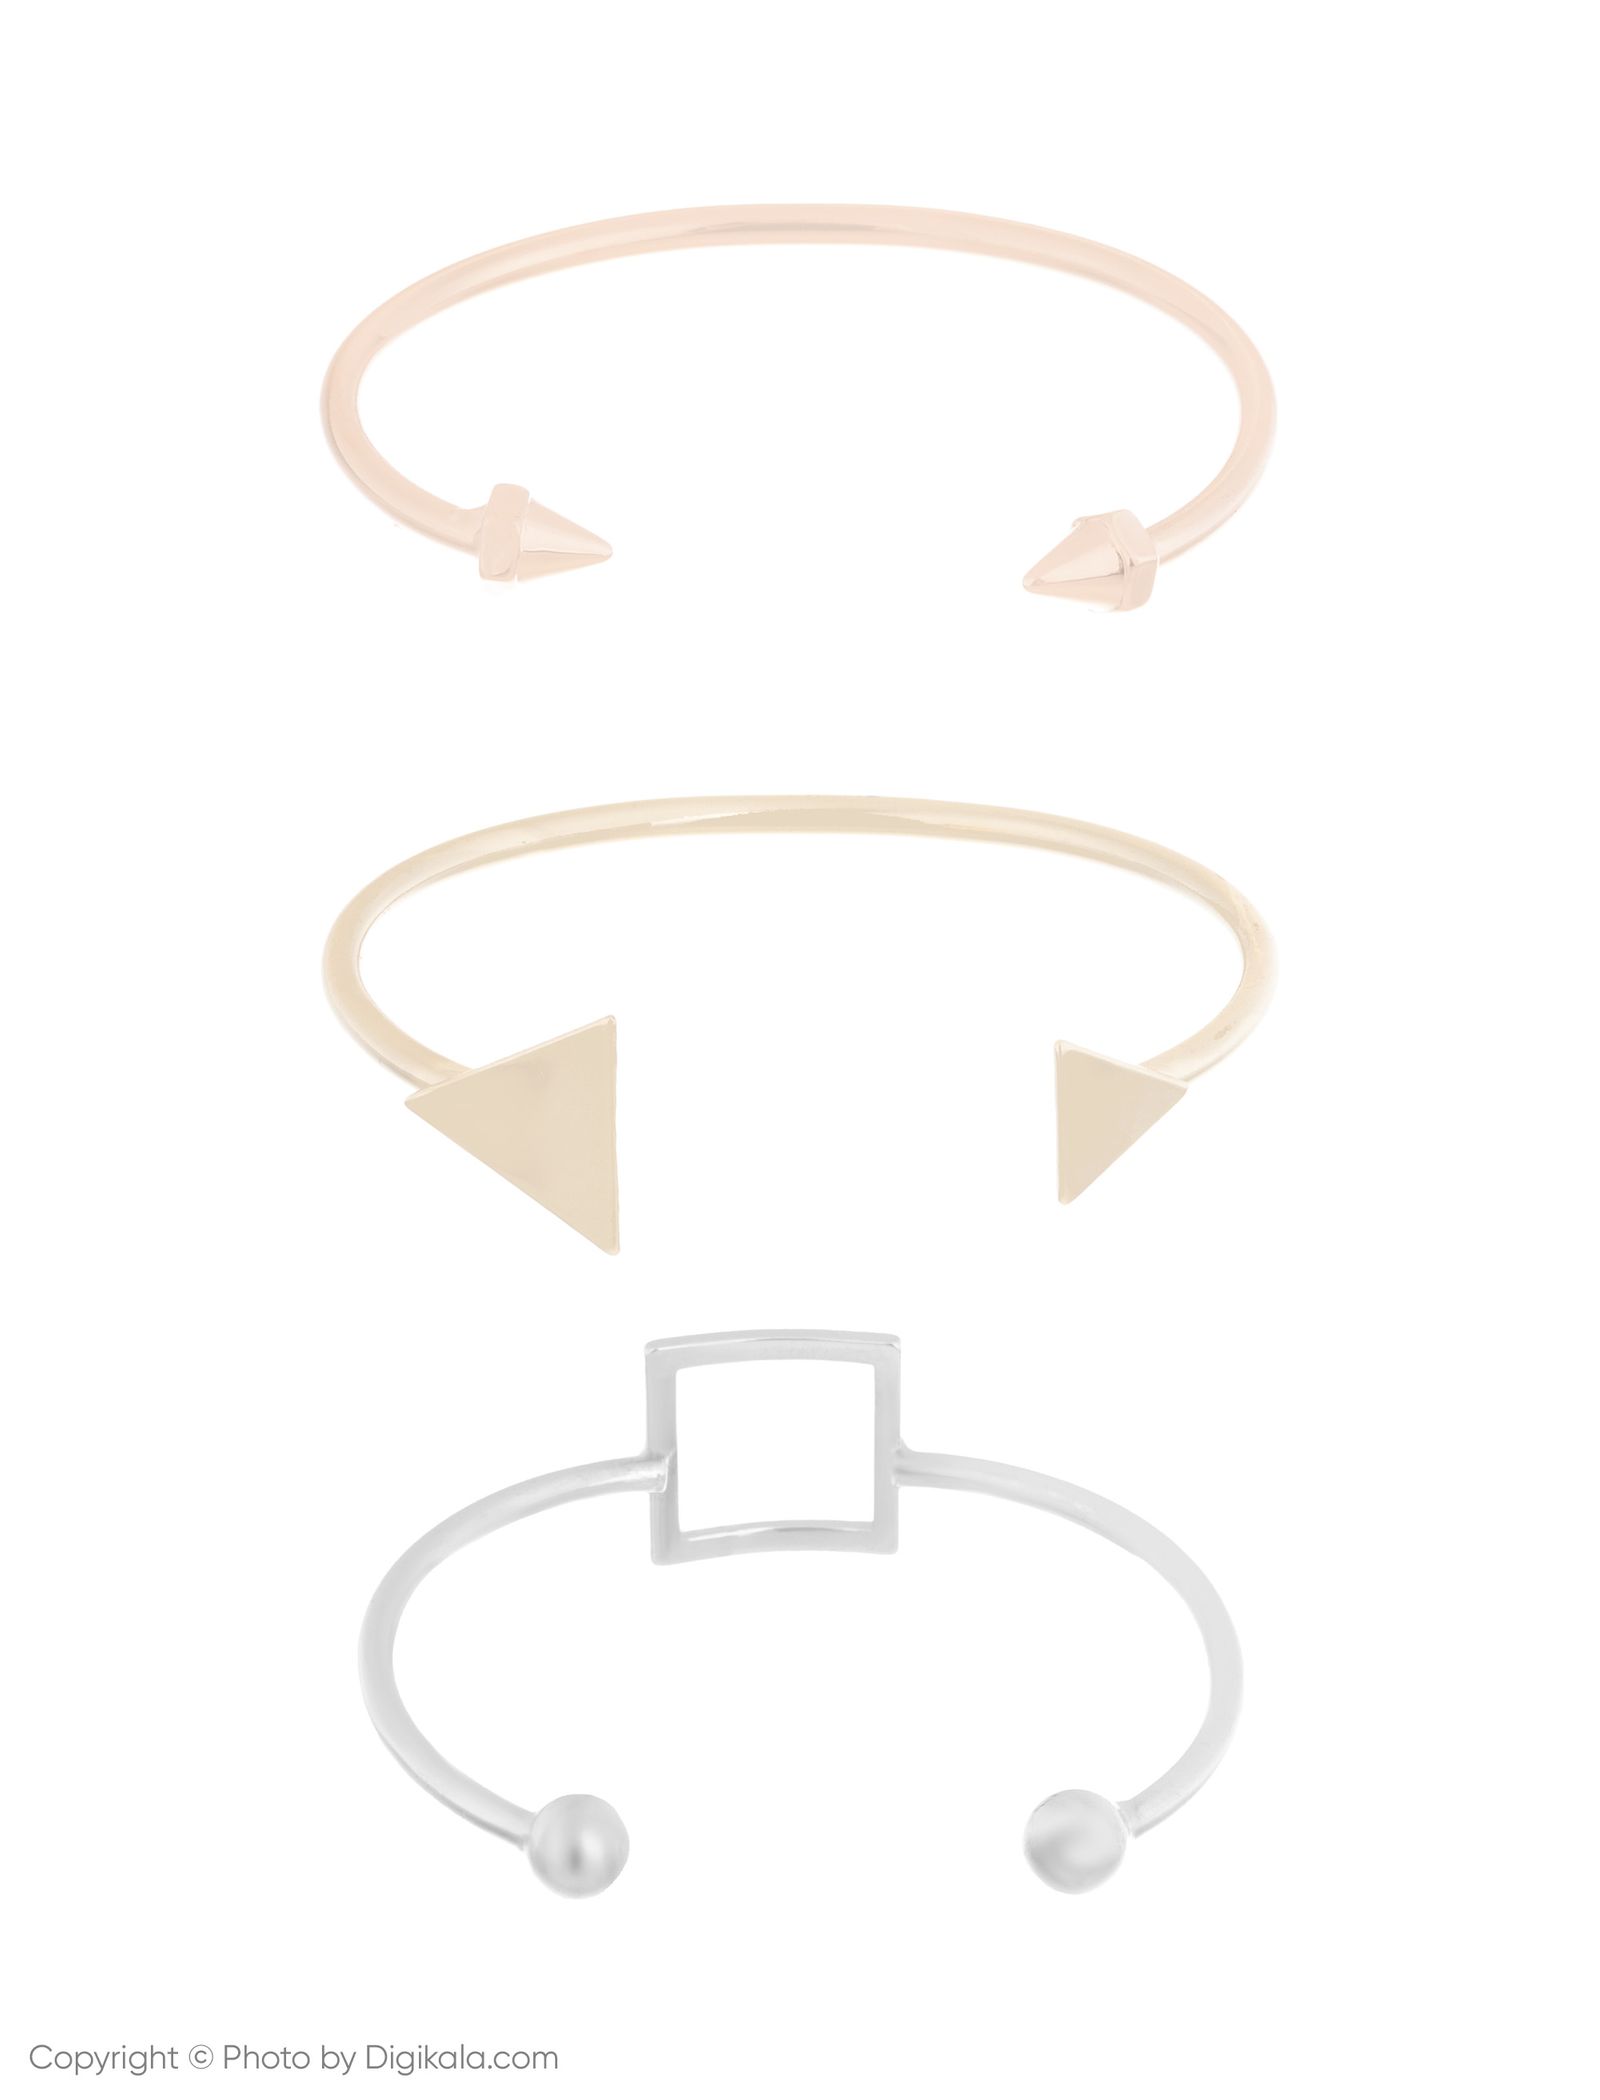 دستبند النگویی زنانه اسپرینگ فیلد مدل 8459630-BROWNS بسته 3 عددی - چند رنگ - 2